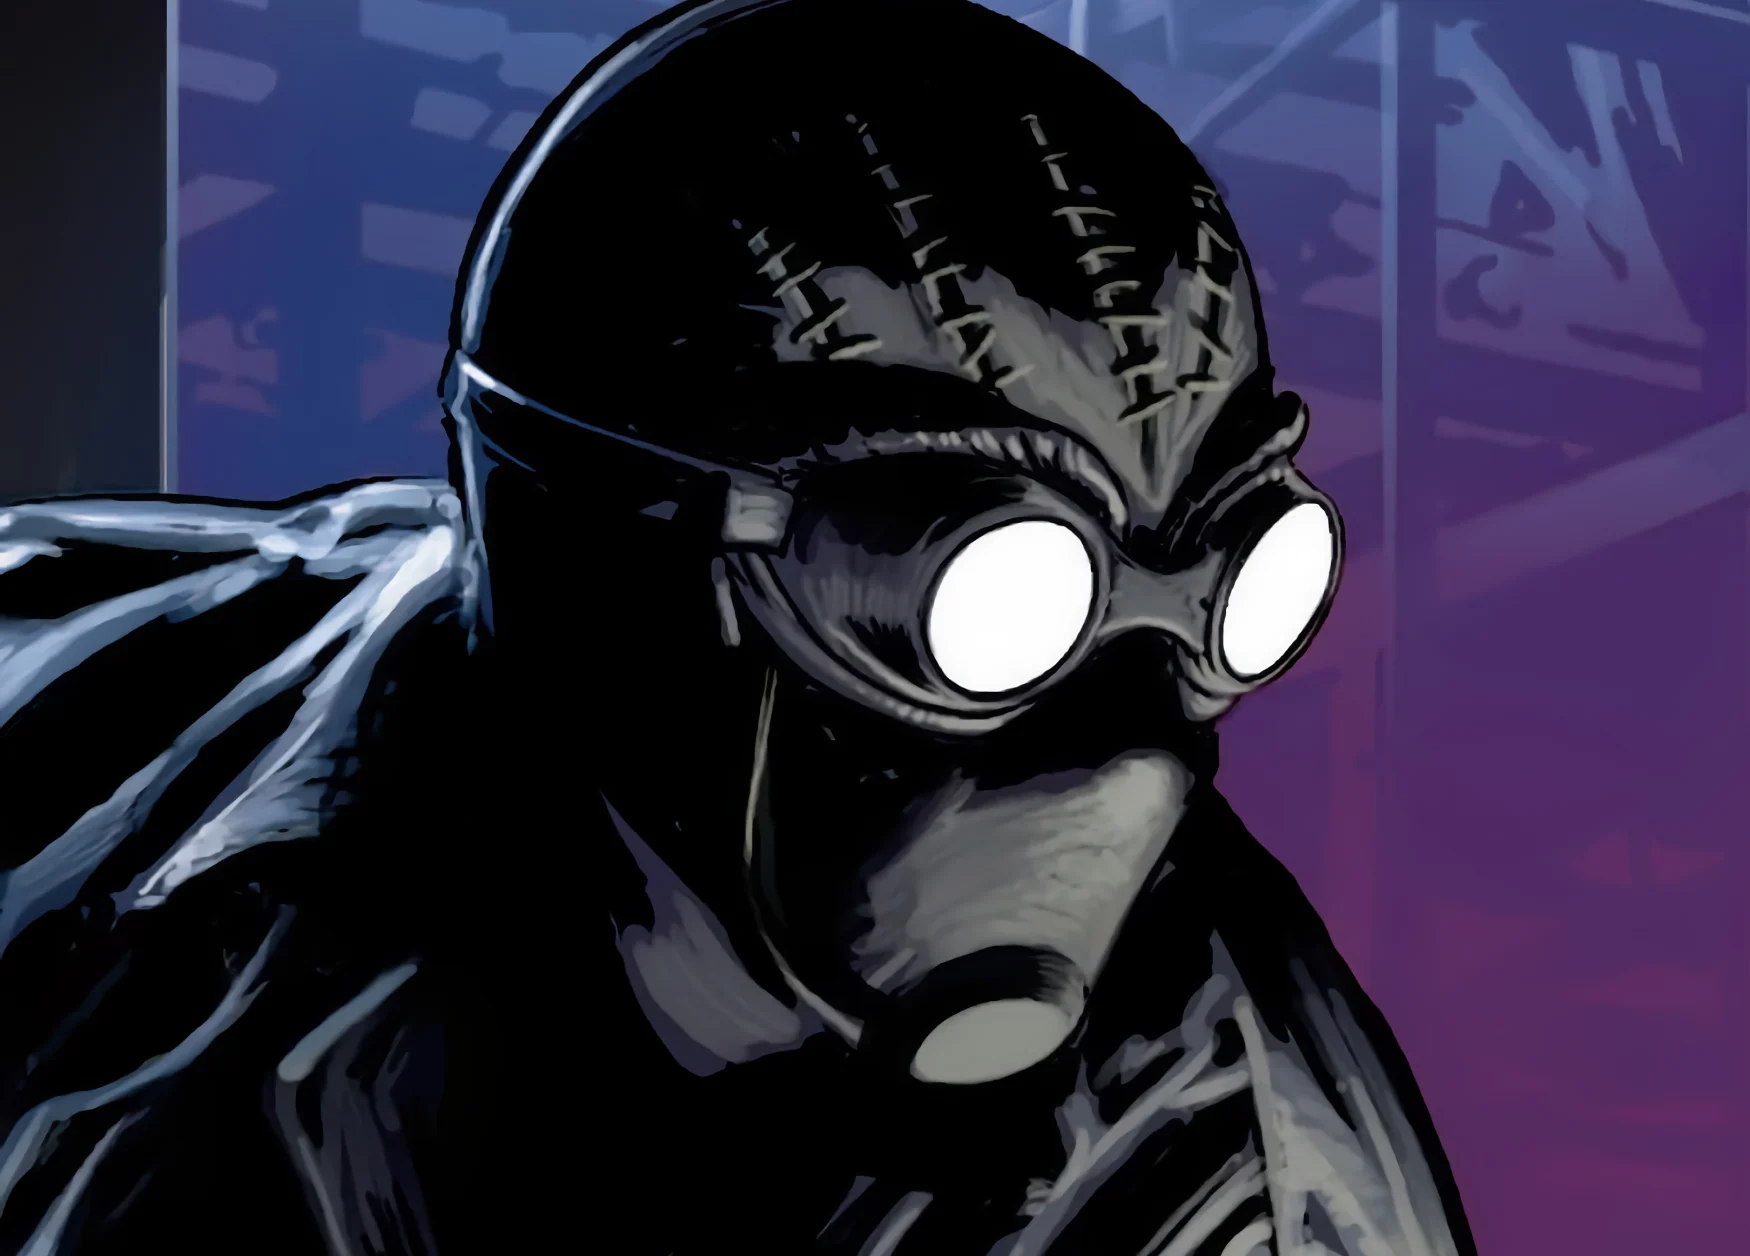 Arte cómico de primer plano sombrío del personaje Spider-Man Noir con un fondo púrpura